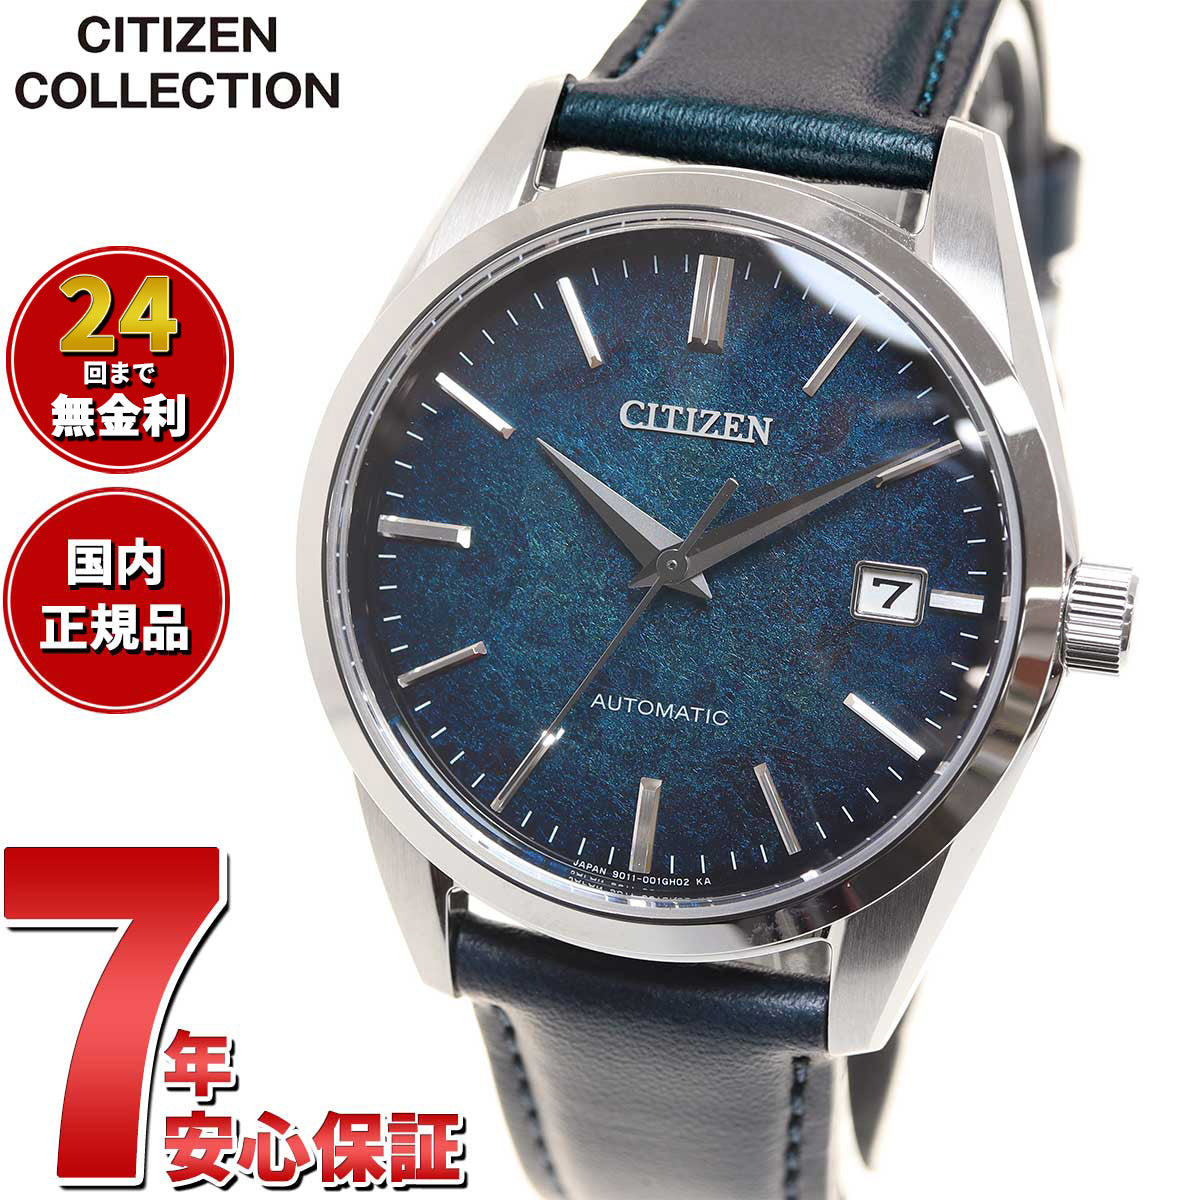 シチズンコレクション CITIZEN COLLECTION メカニカル 自動巻き 機械式 銀箔漆文字板モデル 腕時計 メンズ NB1060-12L